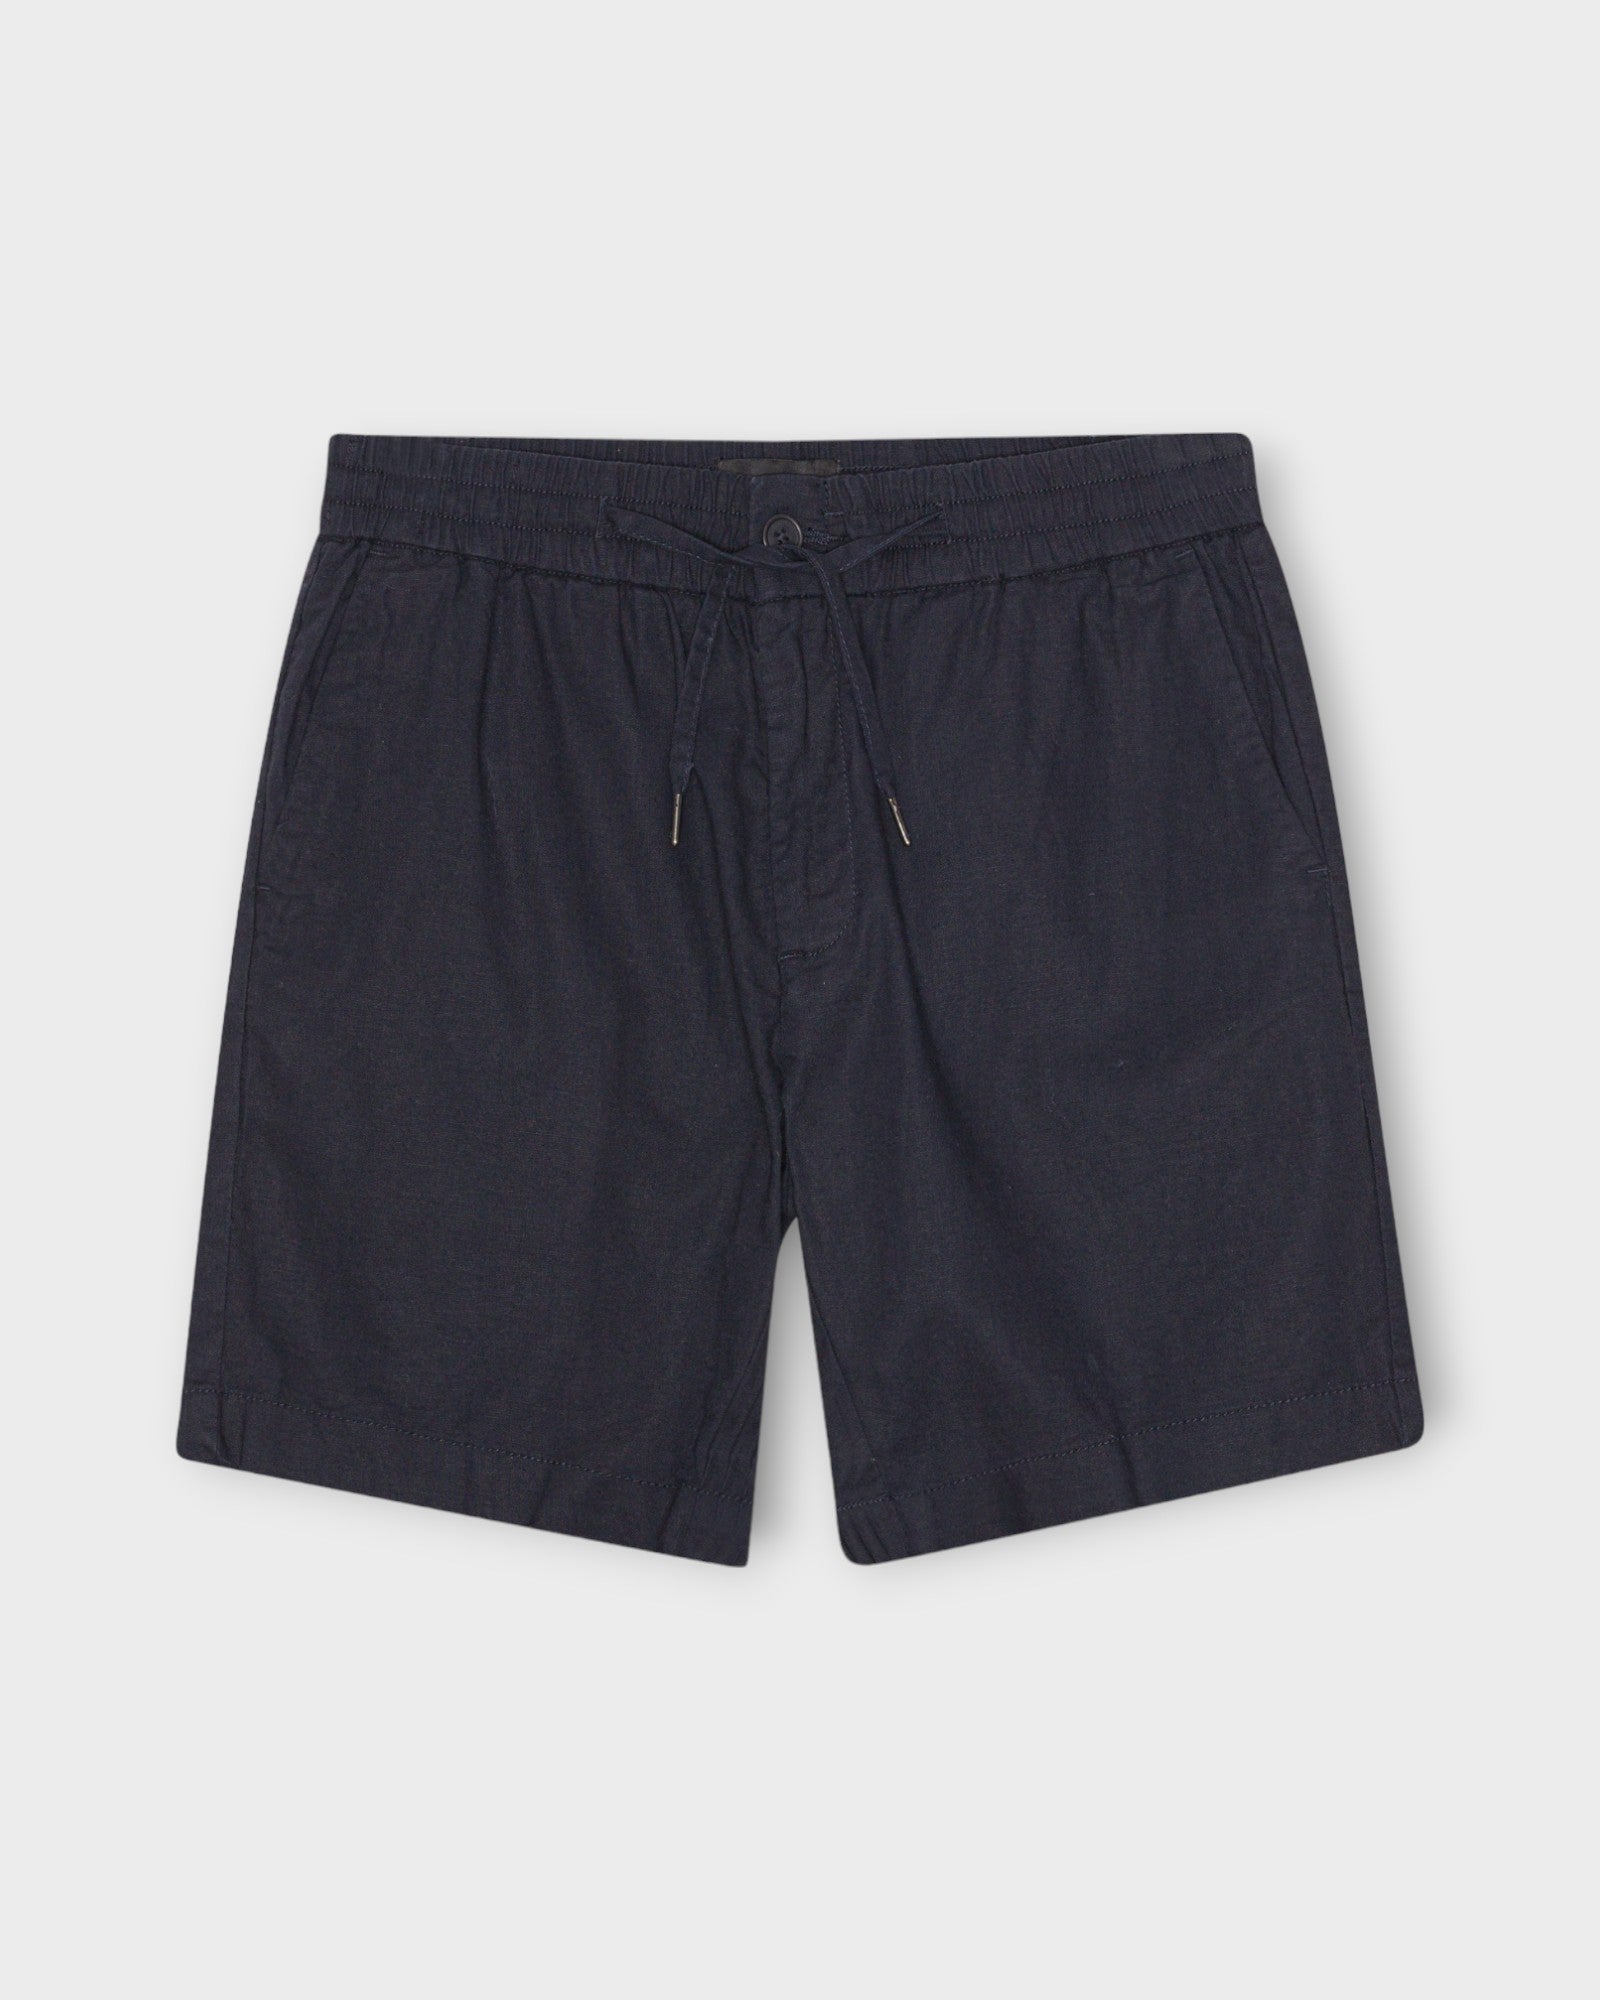 Barcelona Cotton Linen Shorts Navy fra Clean Cut Copenhagen. Mørkeblå hør shorts til mænd. Her set forfra.